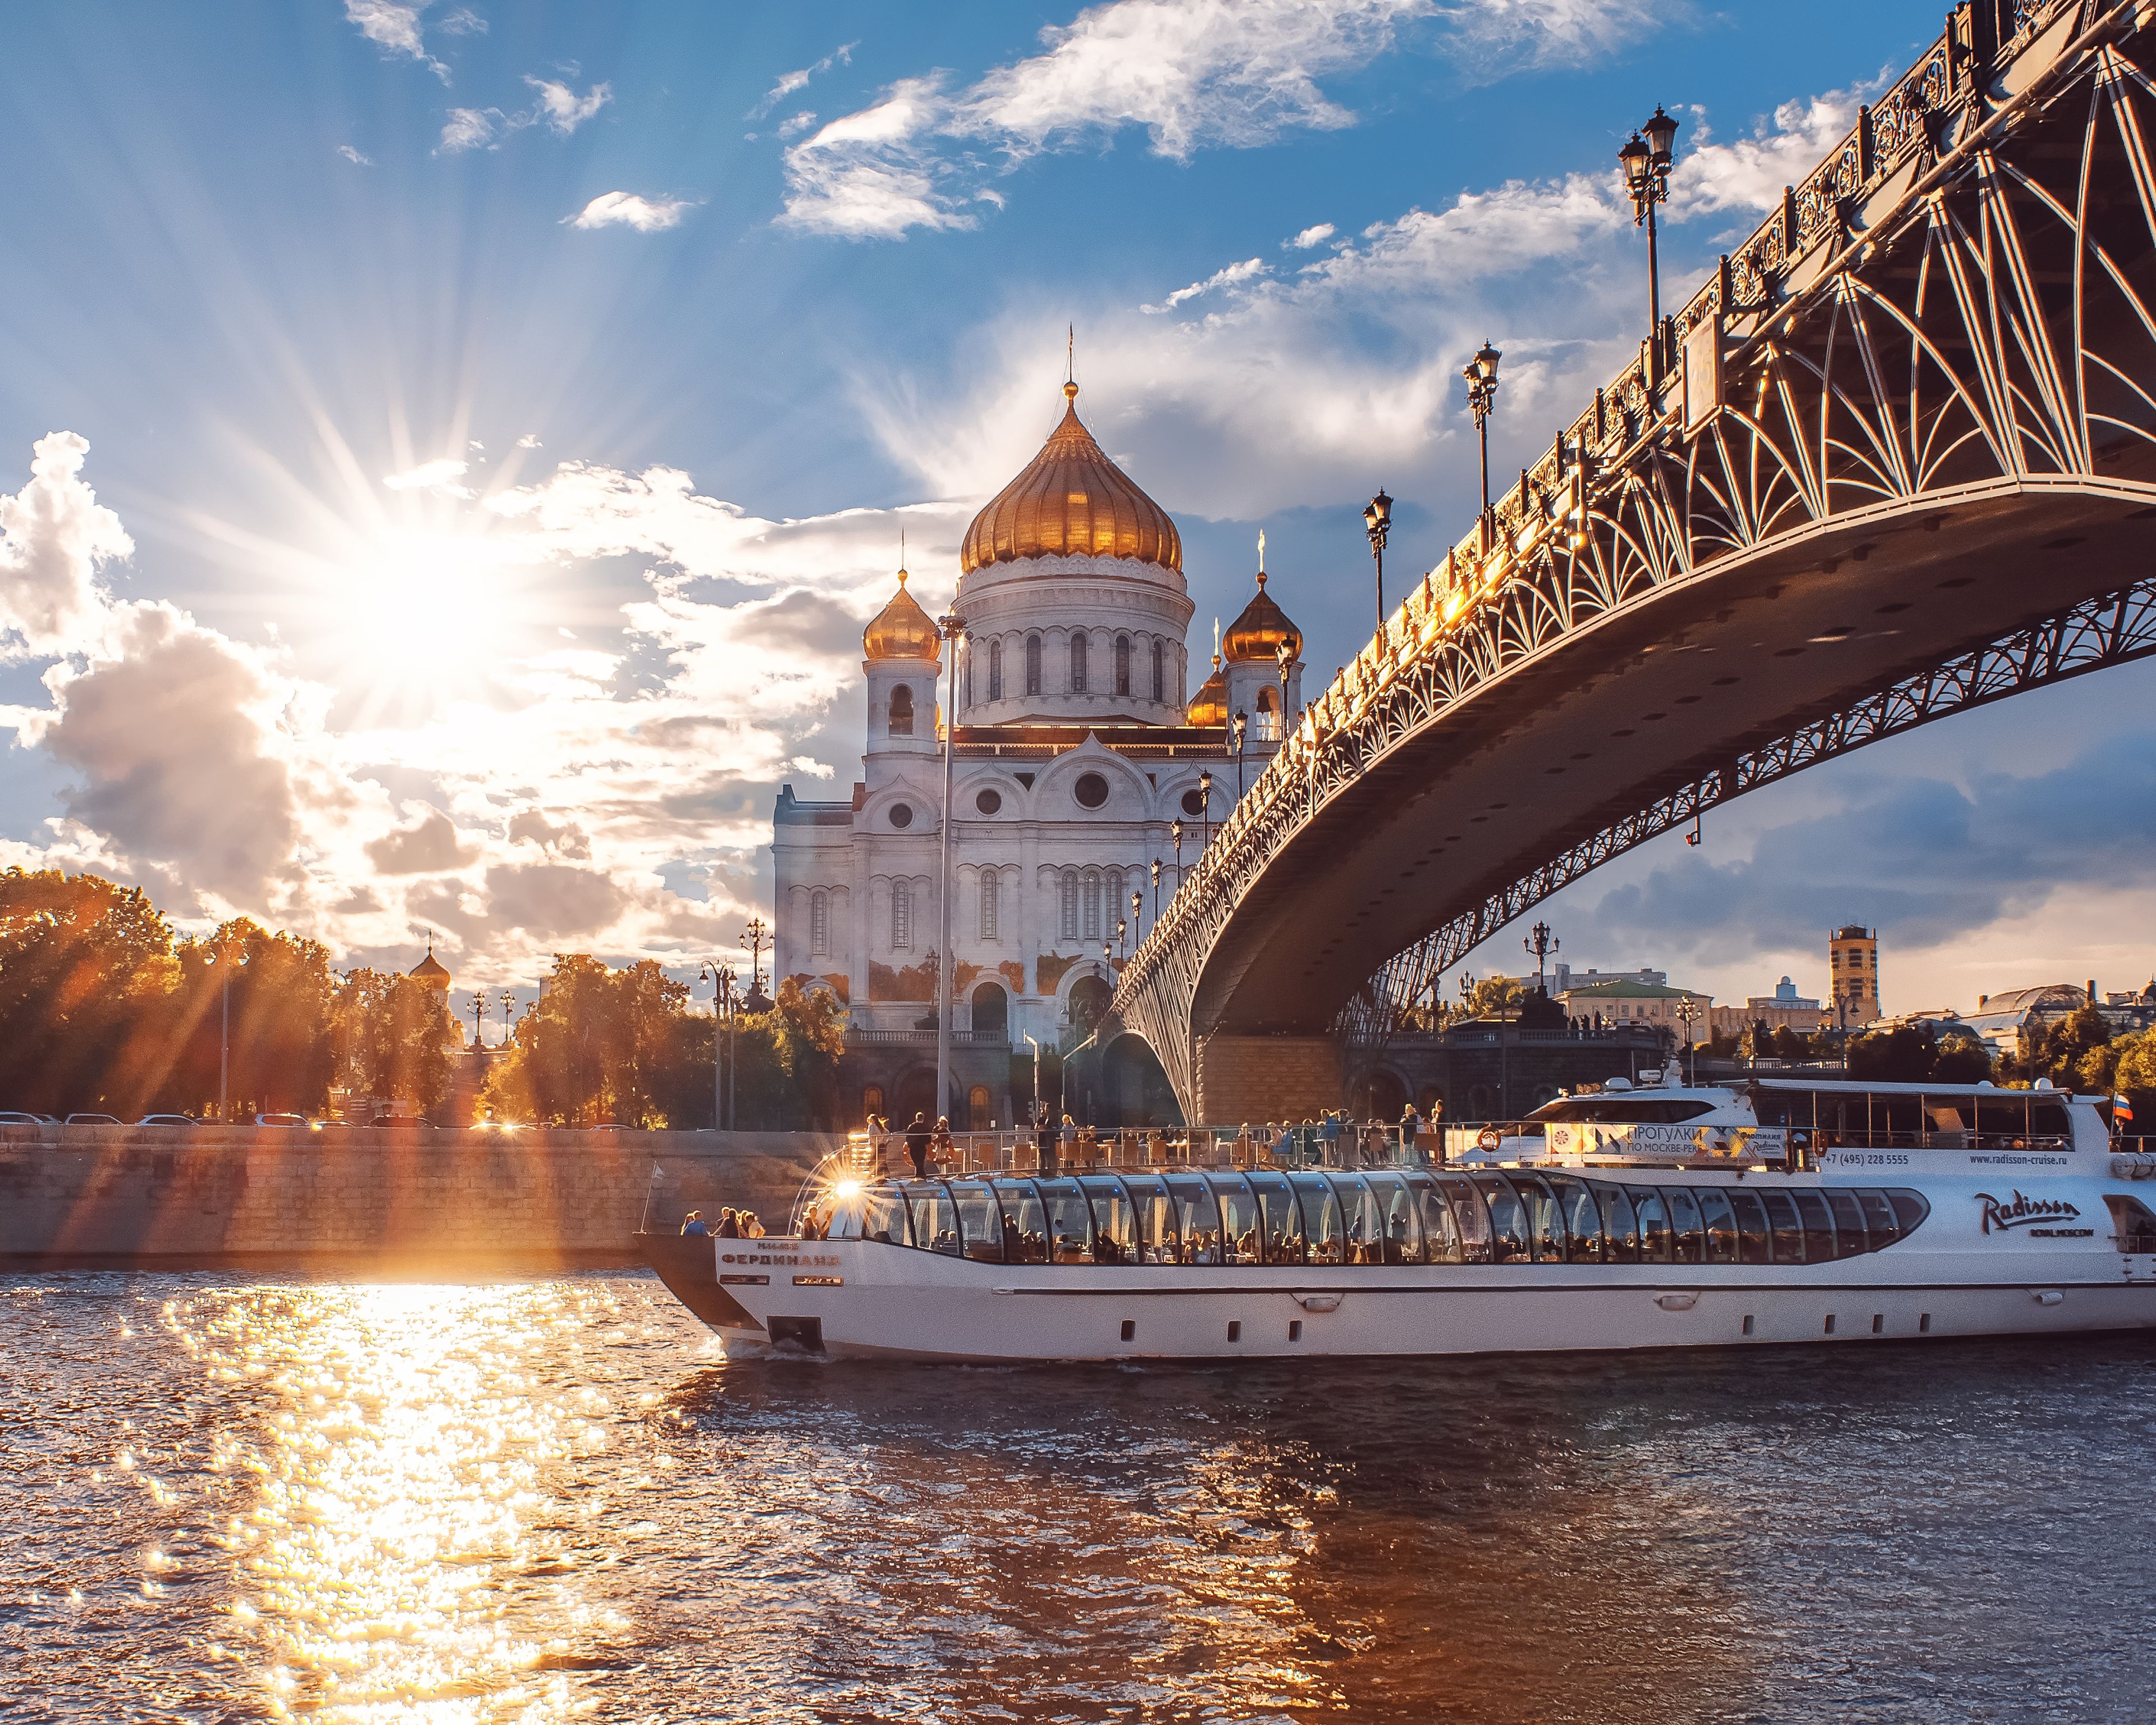 De Moscú a San Petersburgo, capitales de los zares